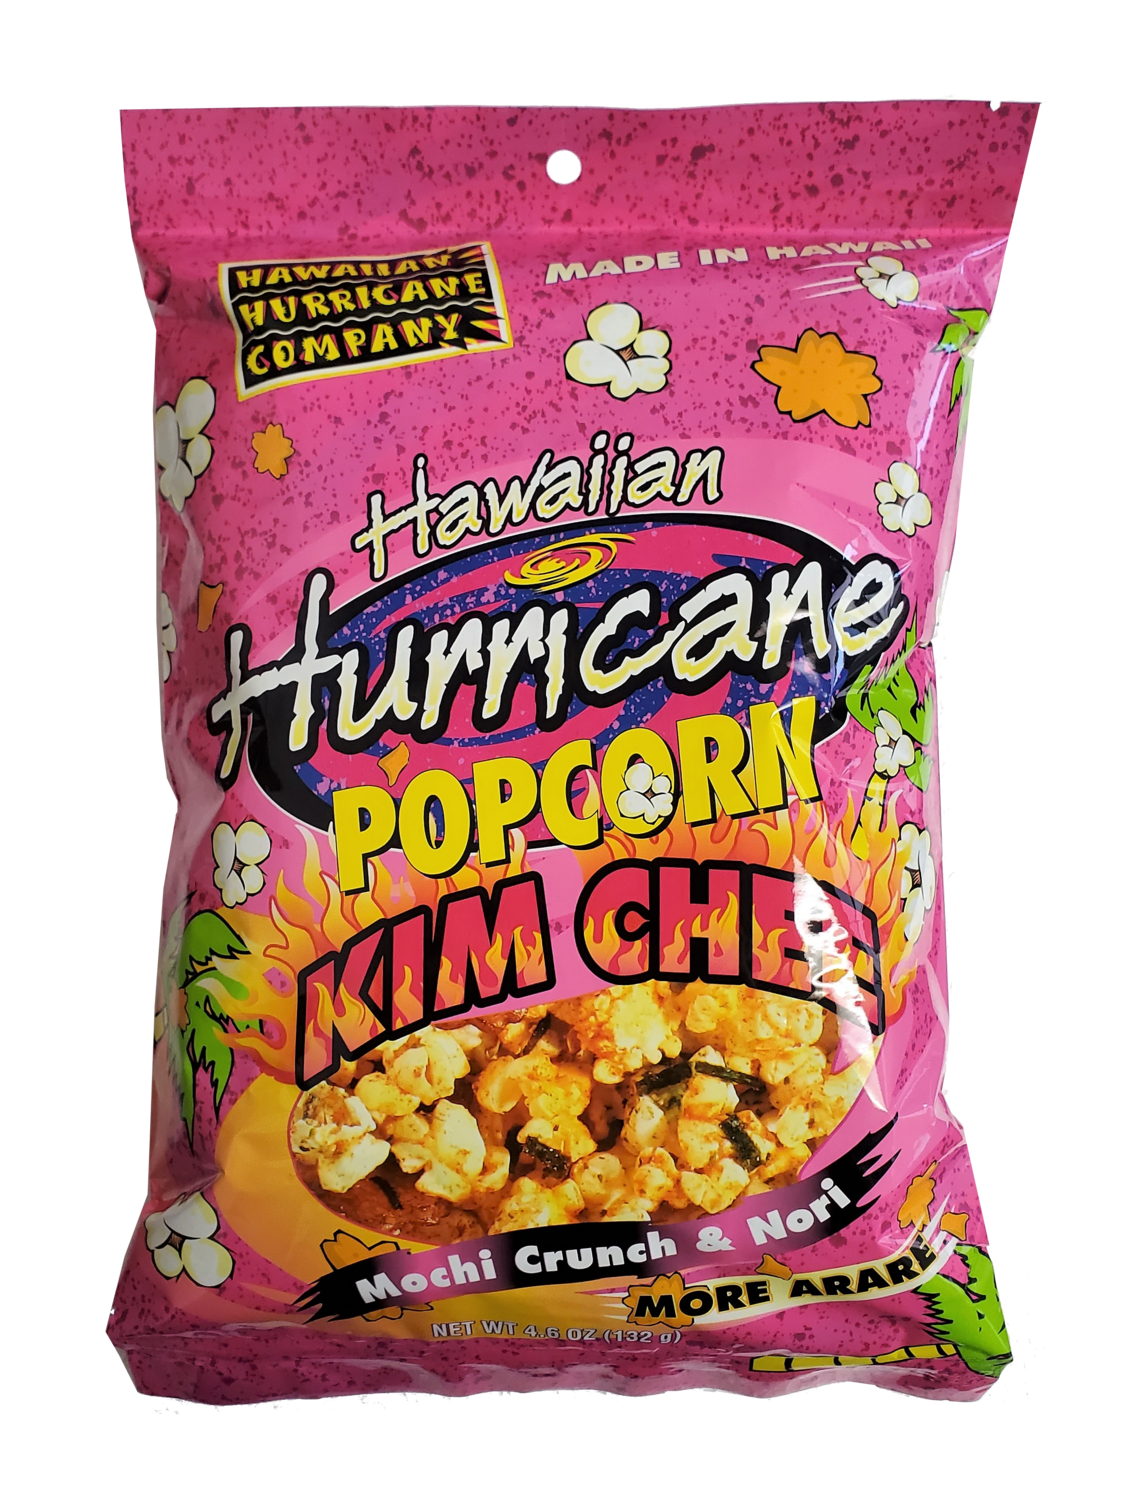 Hawaiian Hurricane Pre-Popped Popcorn Mochi Crunch & Nori 4 oz